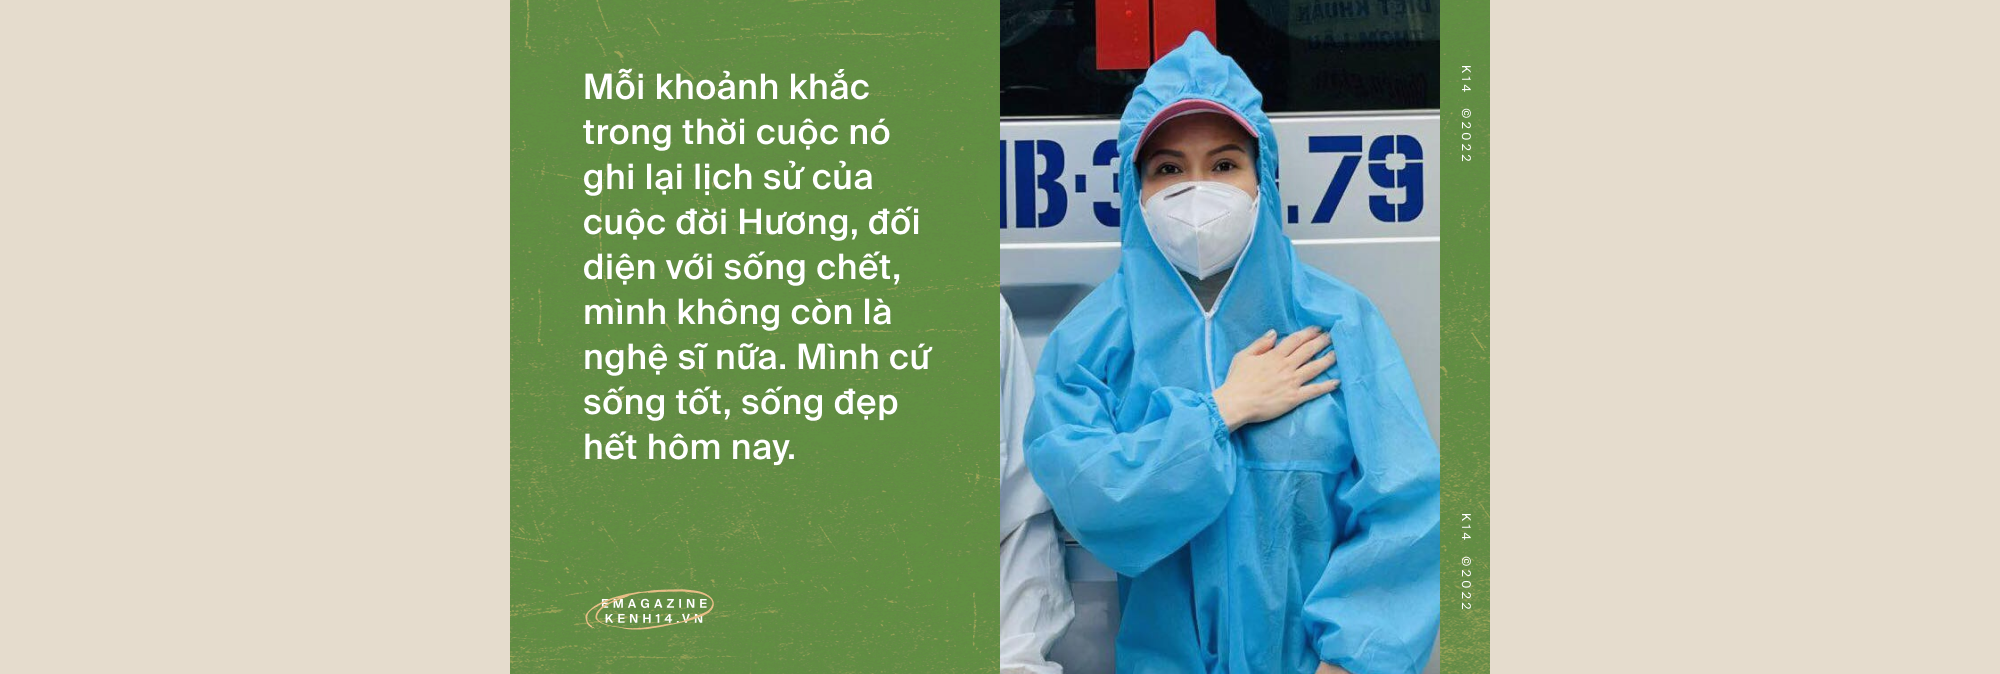 Việt Hương: Đã có nhiều người gọi điện nắm tay tôi nói sẽ cố sống, nhưng qua hôm sau tôi phải đưa áo quan tới - Ảnh 2.